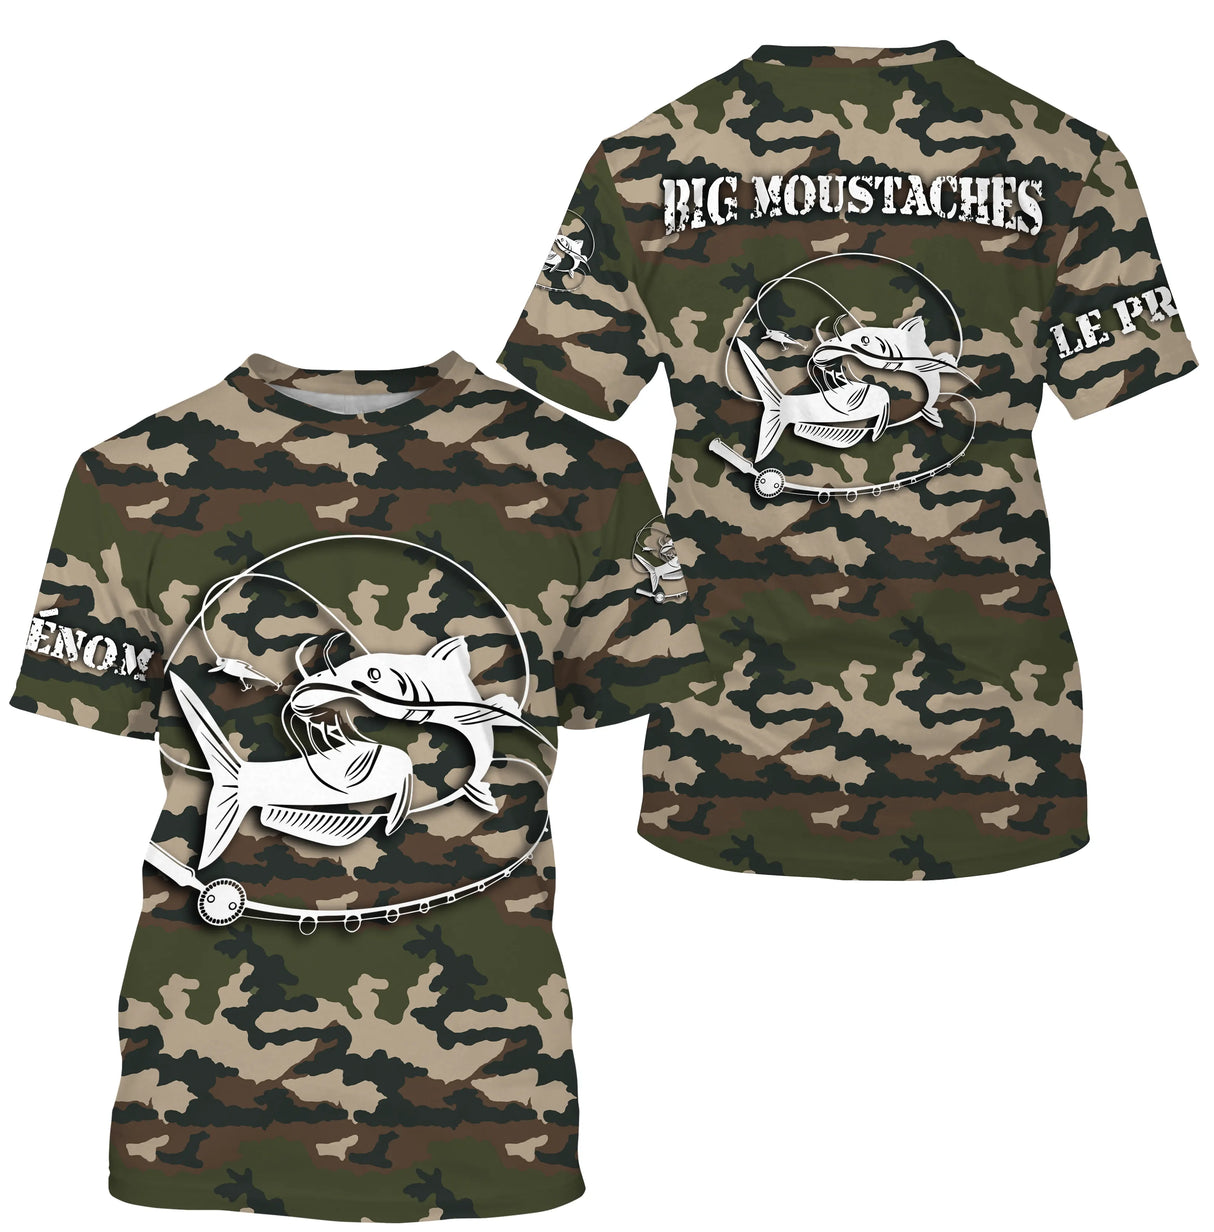 T-shirt umoristica sulla pesca del pesce gatto, regalo originale per pescatori, mimetica per la pesca, t-shirt personalizzata, GRANDI BAFFI - CTS26042216